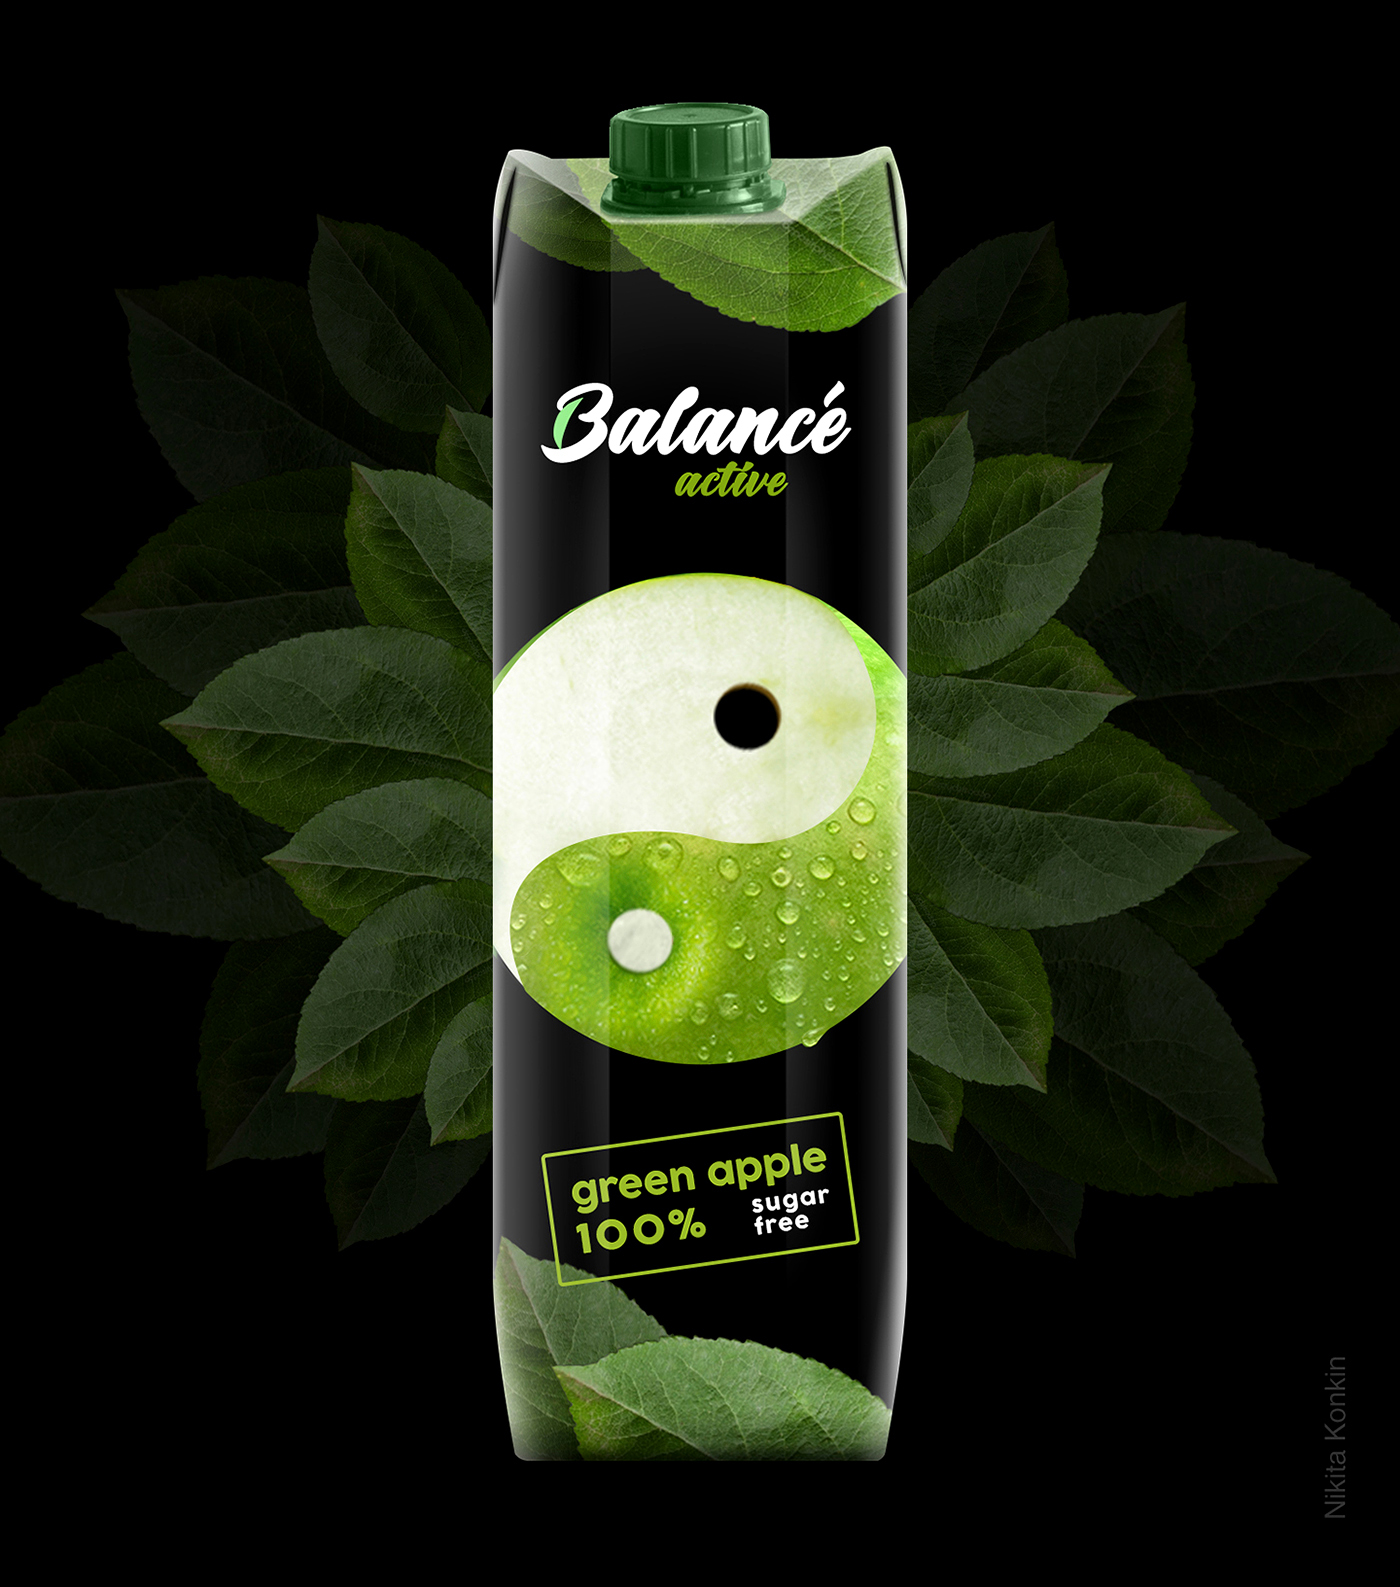 果汁饮料西安oe欧亿体育app官方下载
品牌策划包装设计VI设计logo设计